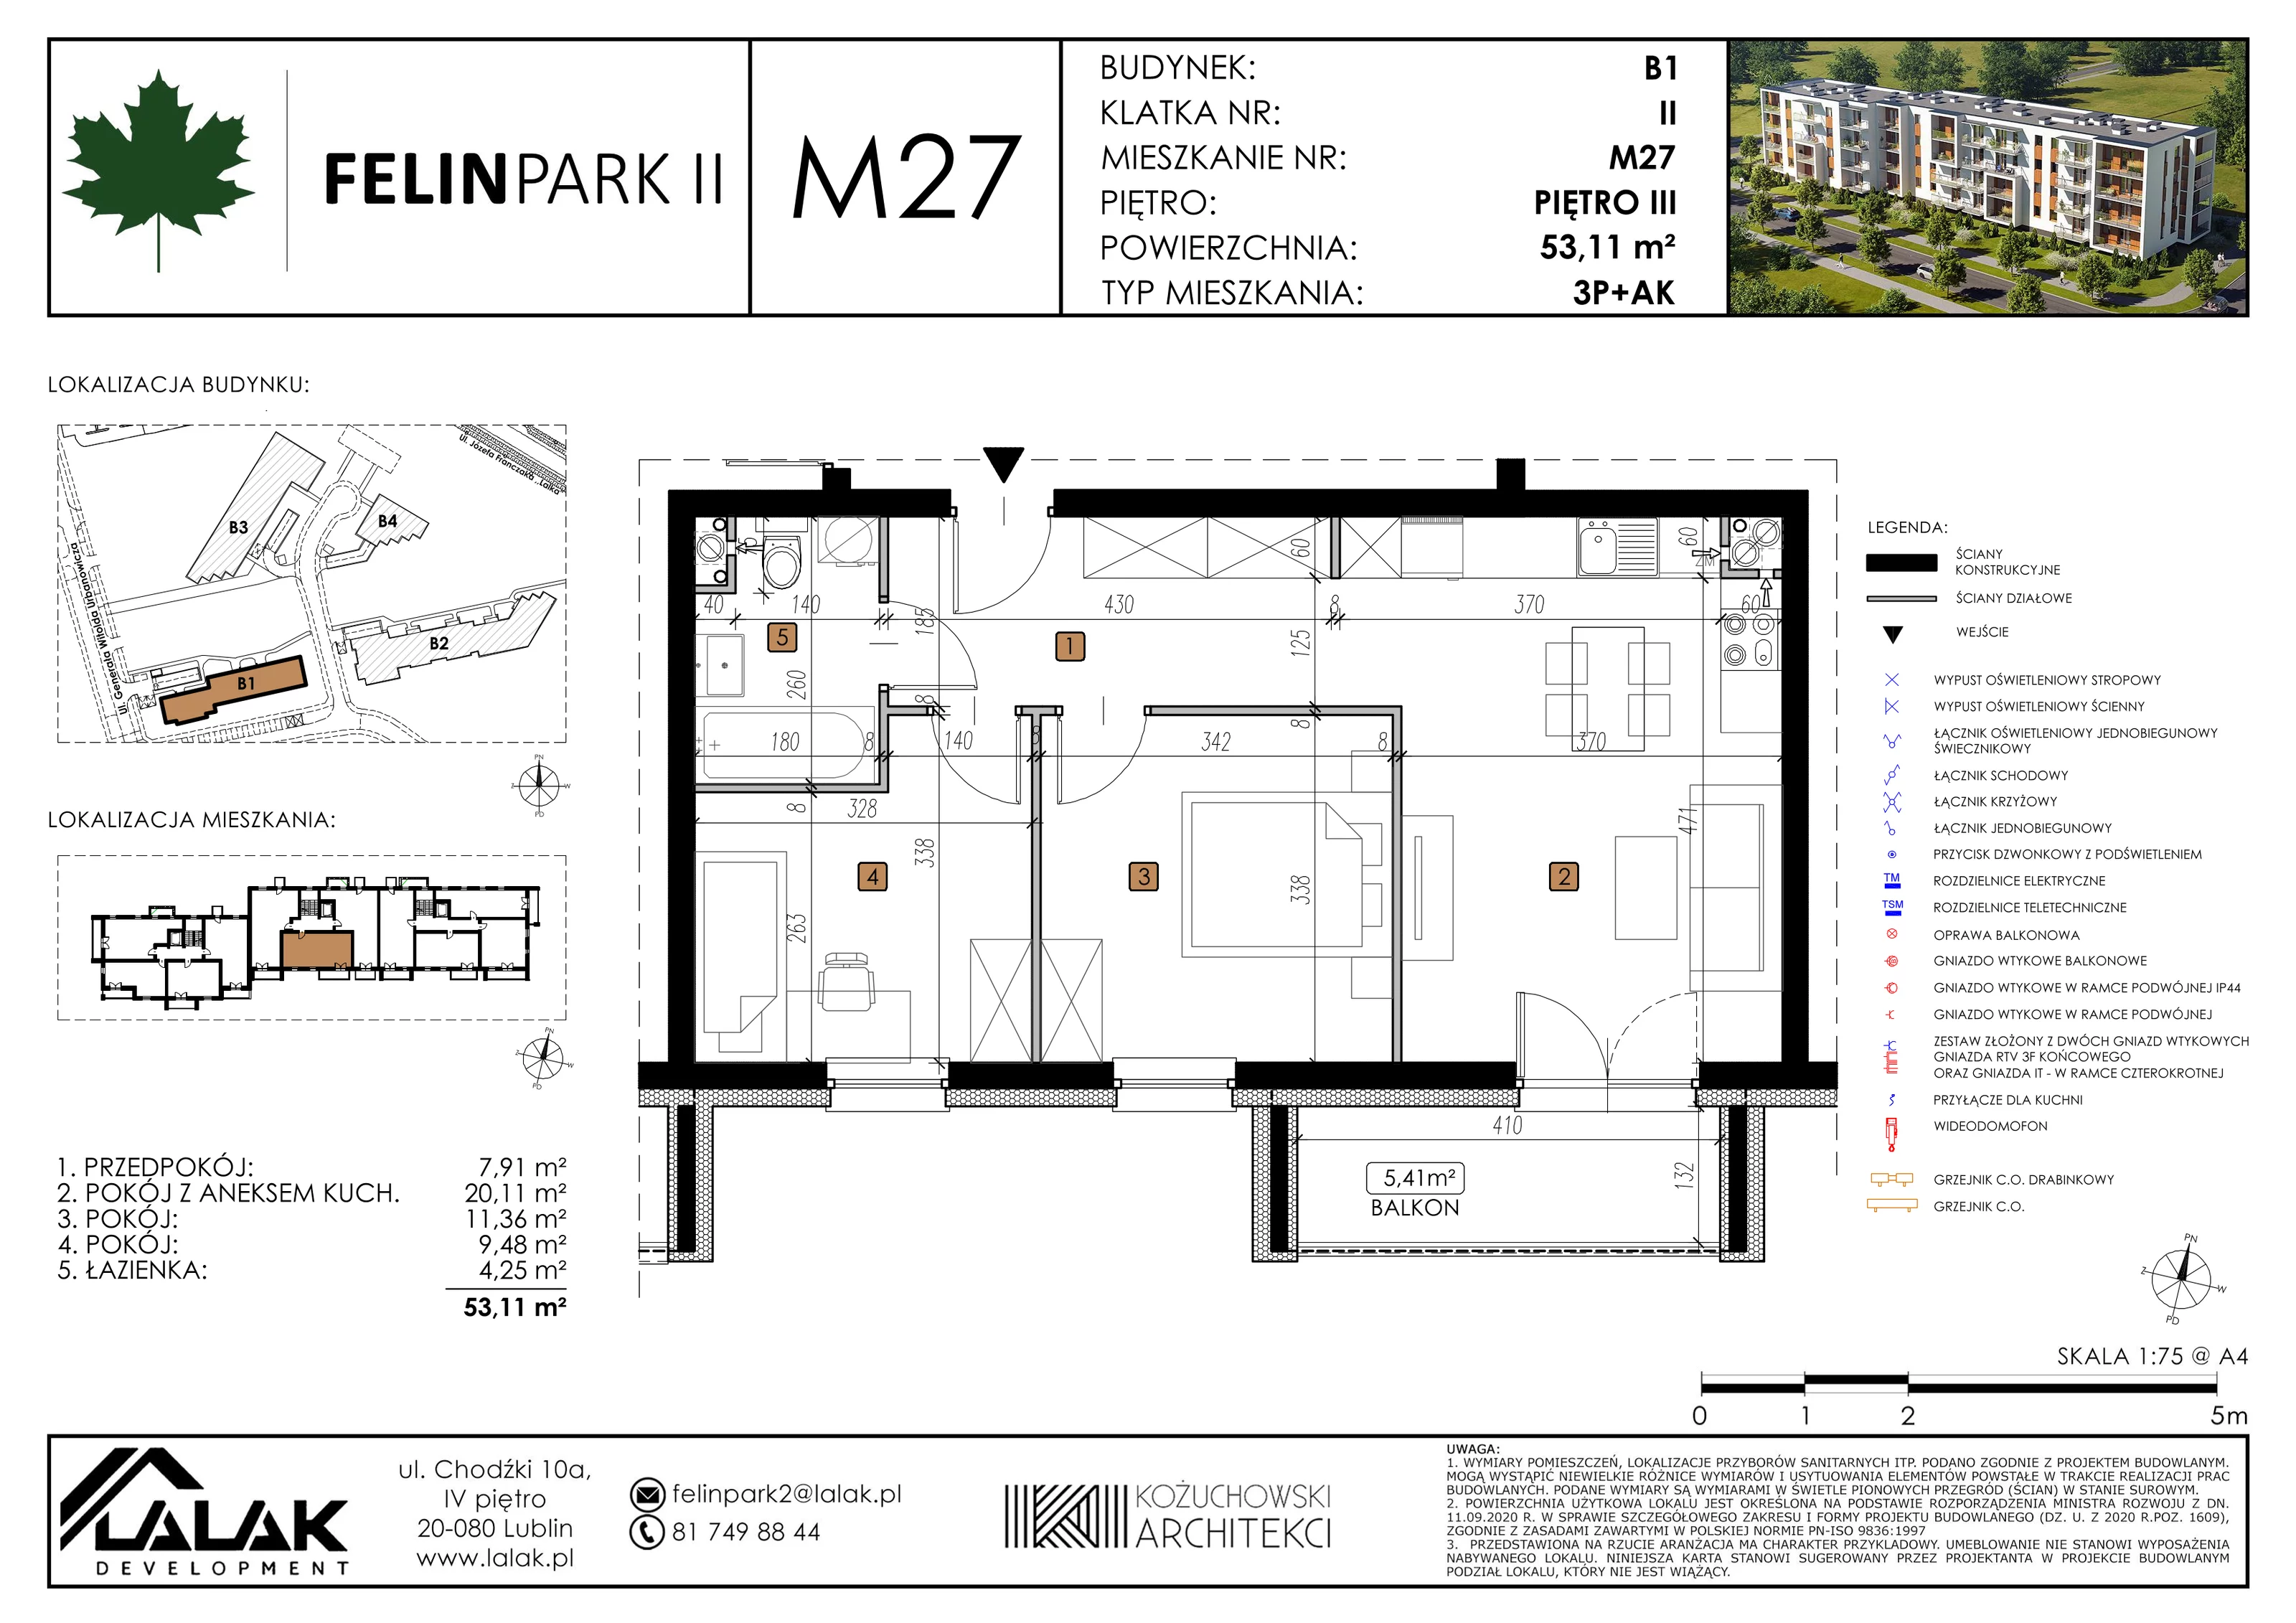 Mieszkanie 53,12 m², piętro 3, oferta nr B1_M27/I, Felin Park II, Lublin, Felin, ul. gen. Stanisława Skalskiego 8-10